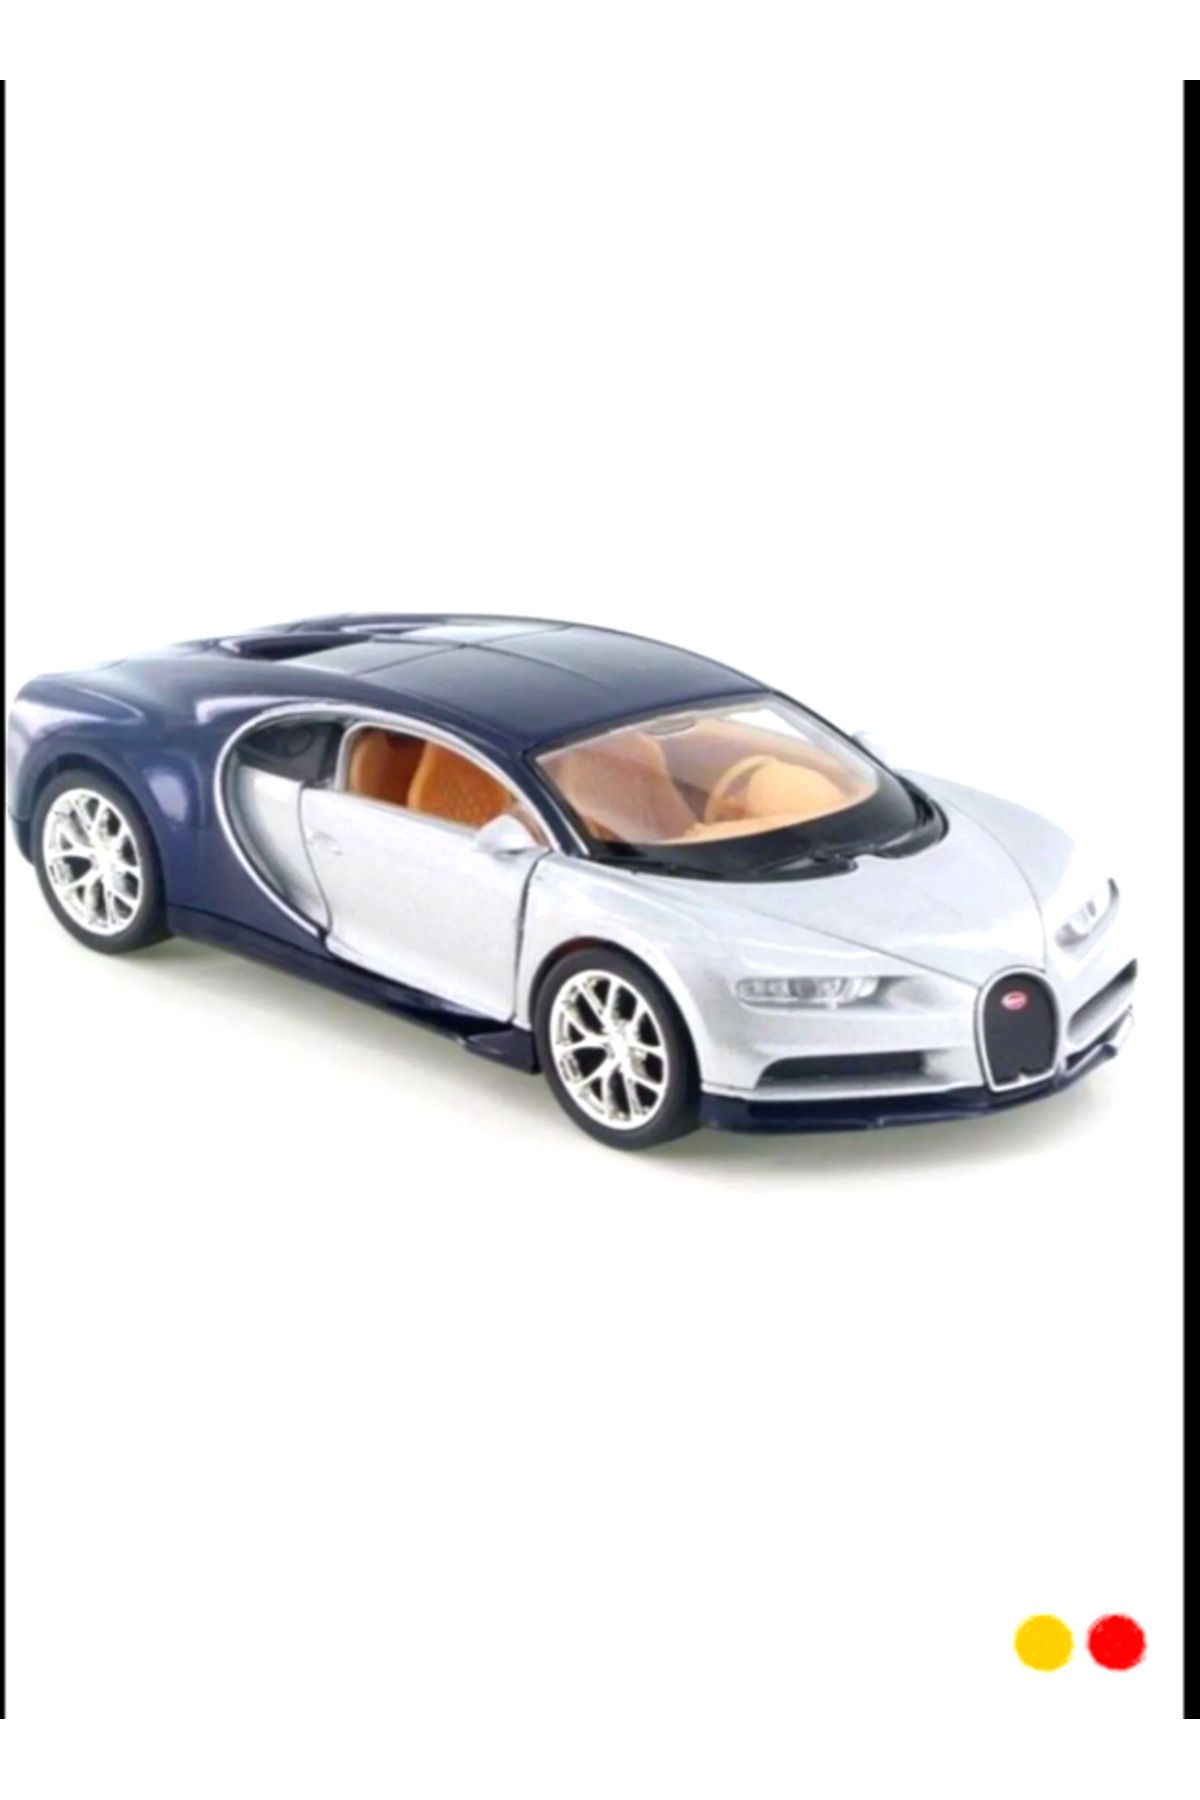 OMZ Lisanslı Bugatti Chiron Çek-bırak Metal Model Araba 1:32 Egitici Oyuncaklar Erkek Cocuk Oyuncak